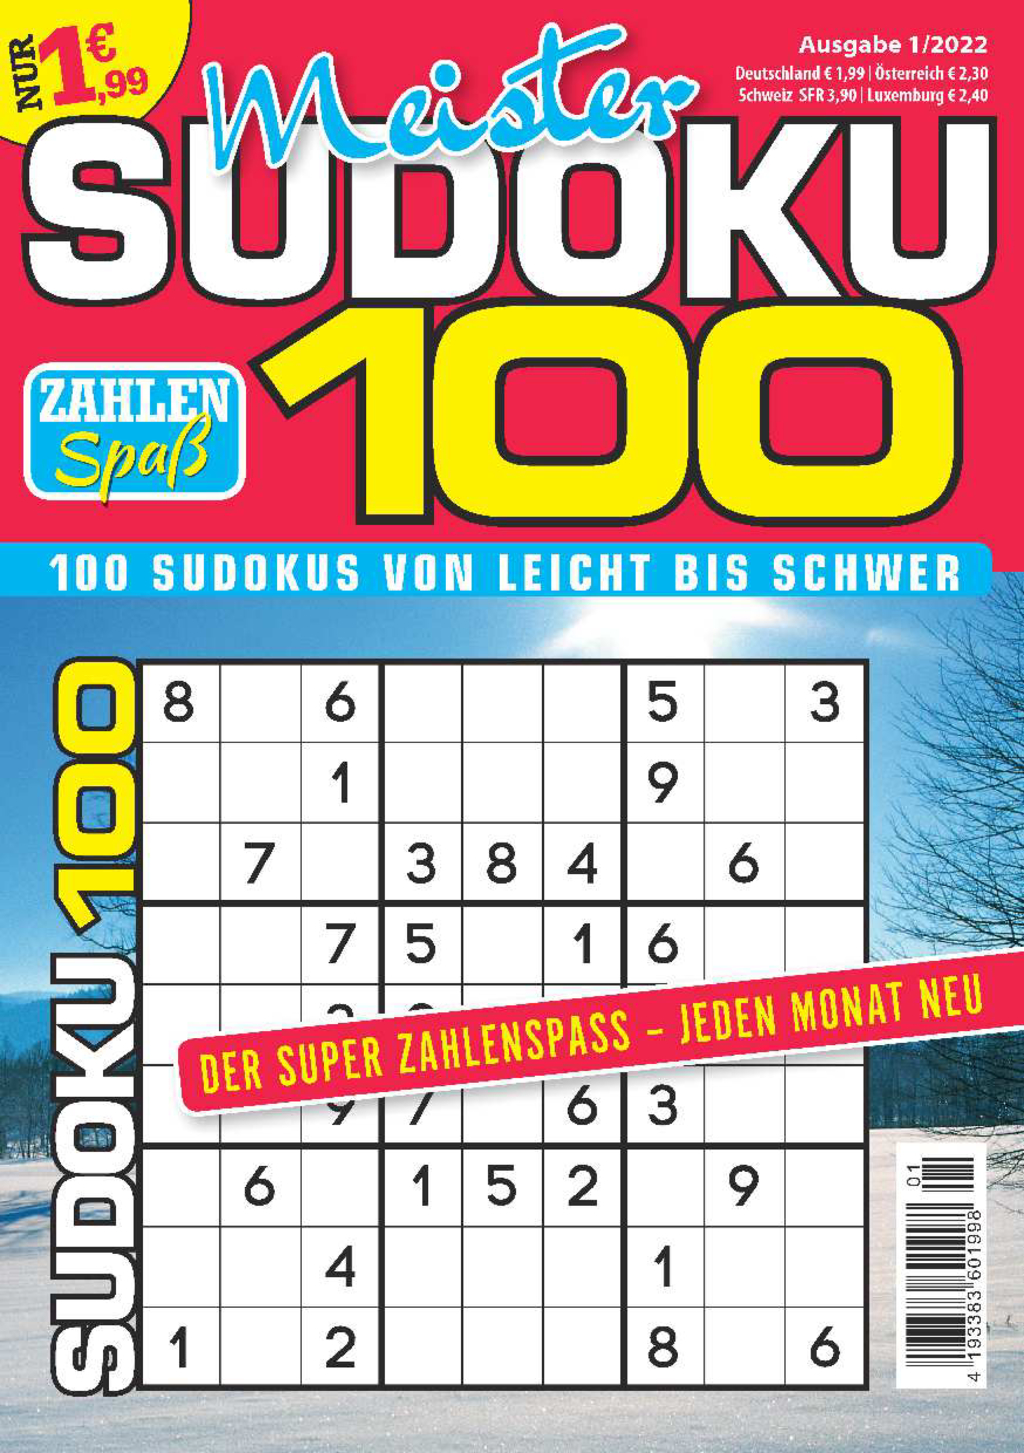 Meister Sudoku 100 1/2022